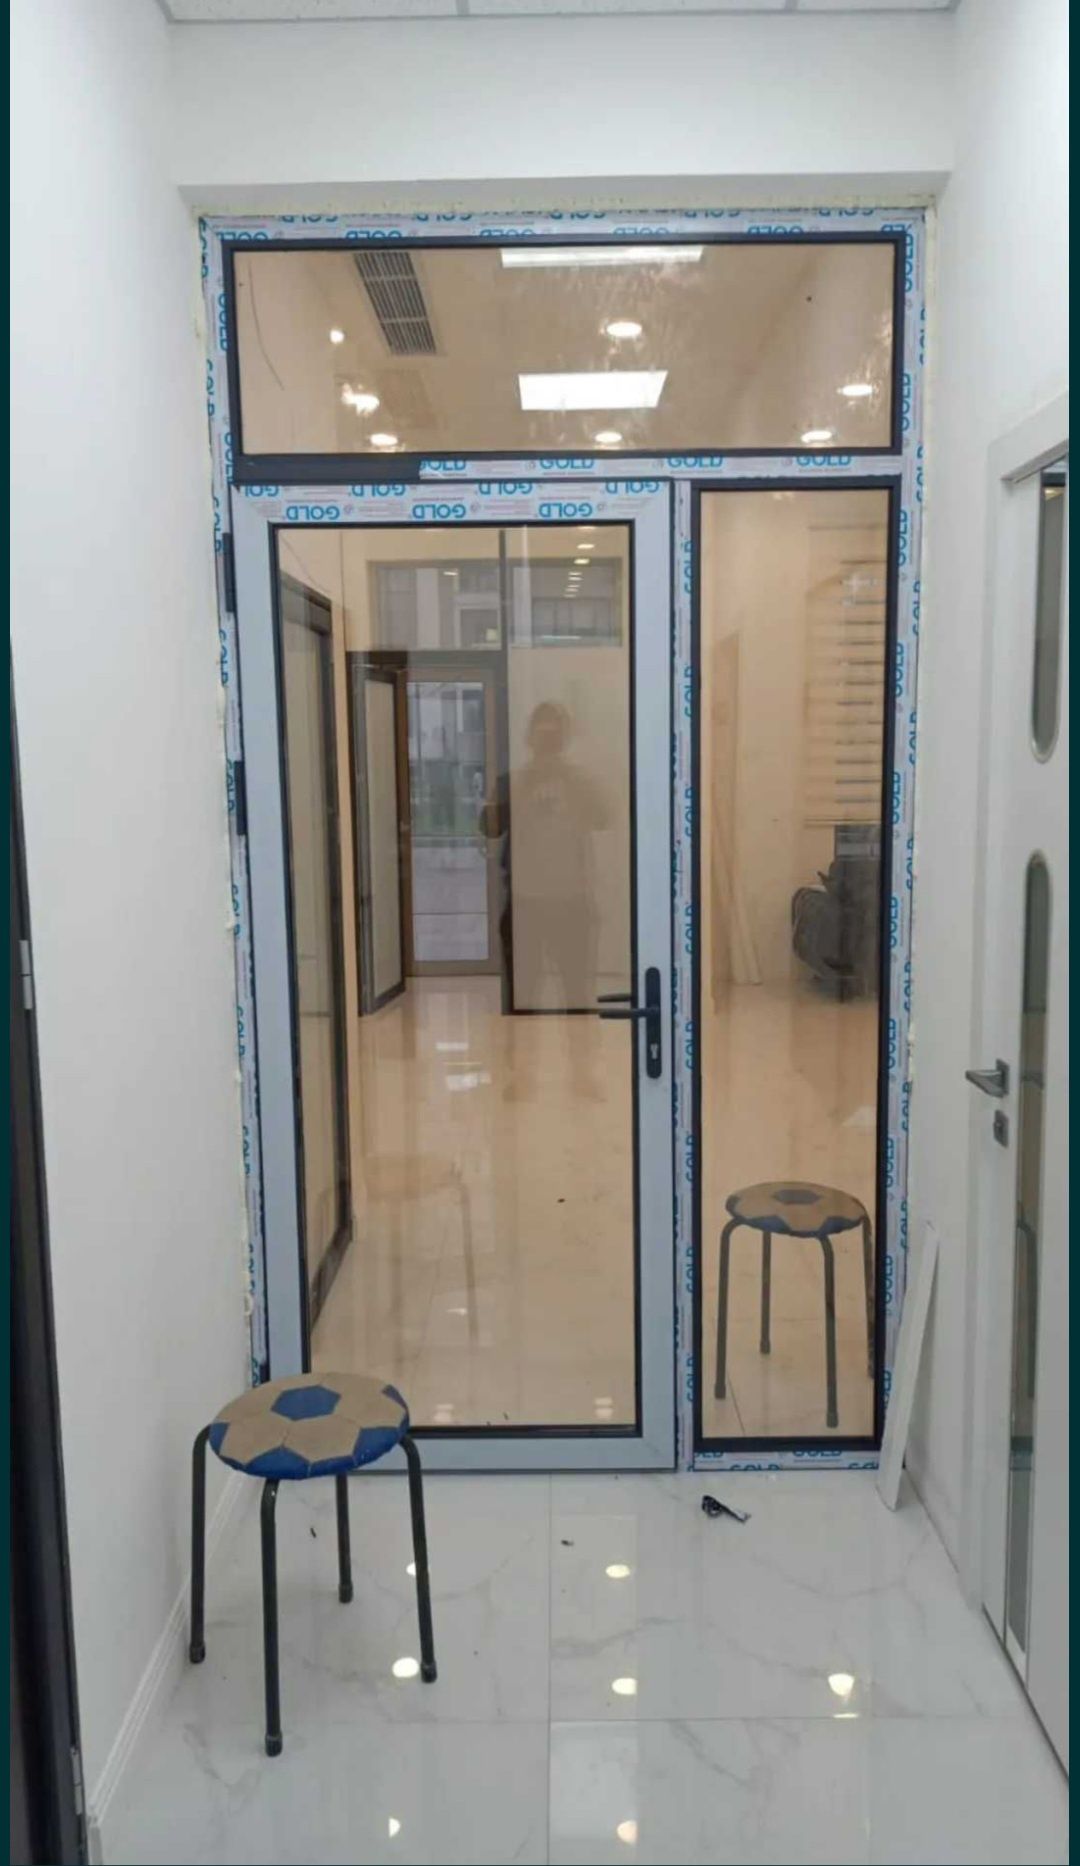 Пластиковые окна двери витражи  Алматы 30000 тыс, гарантия, сервис